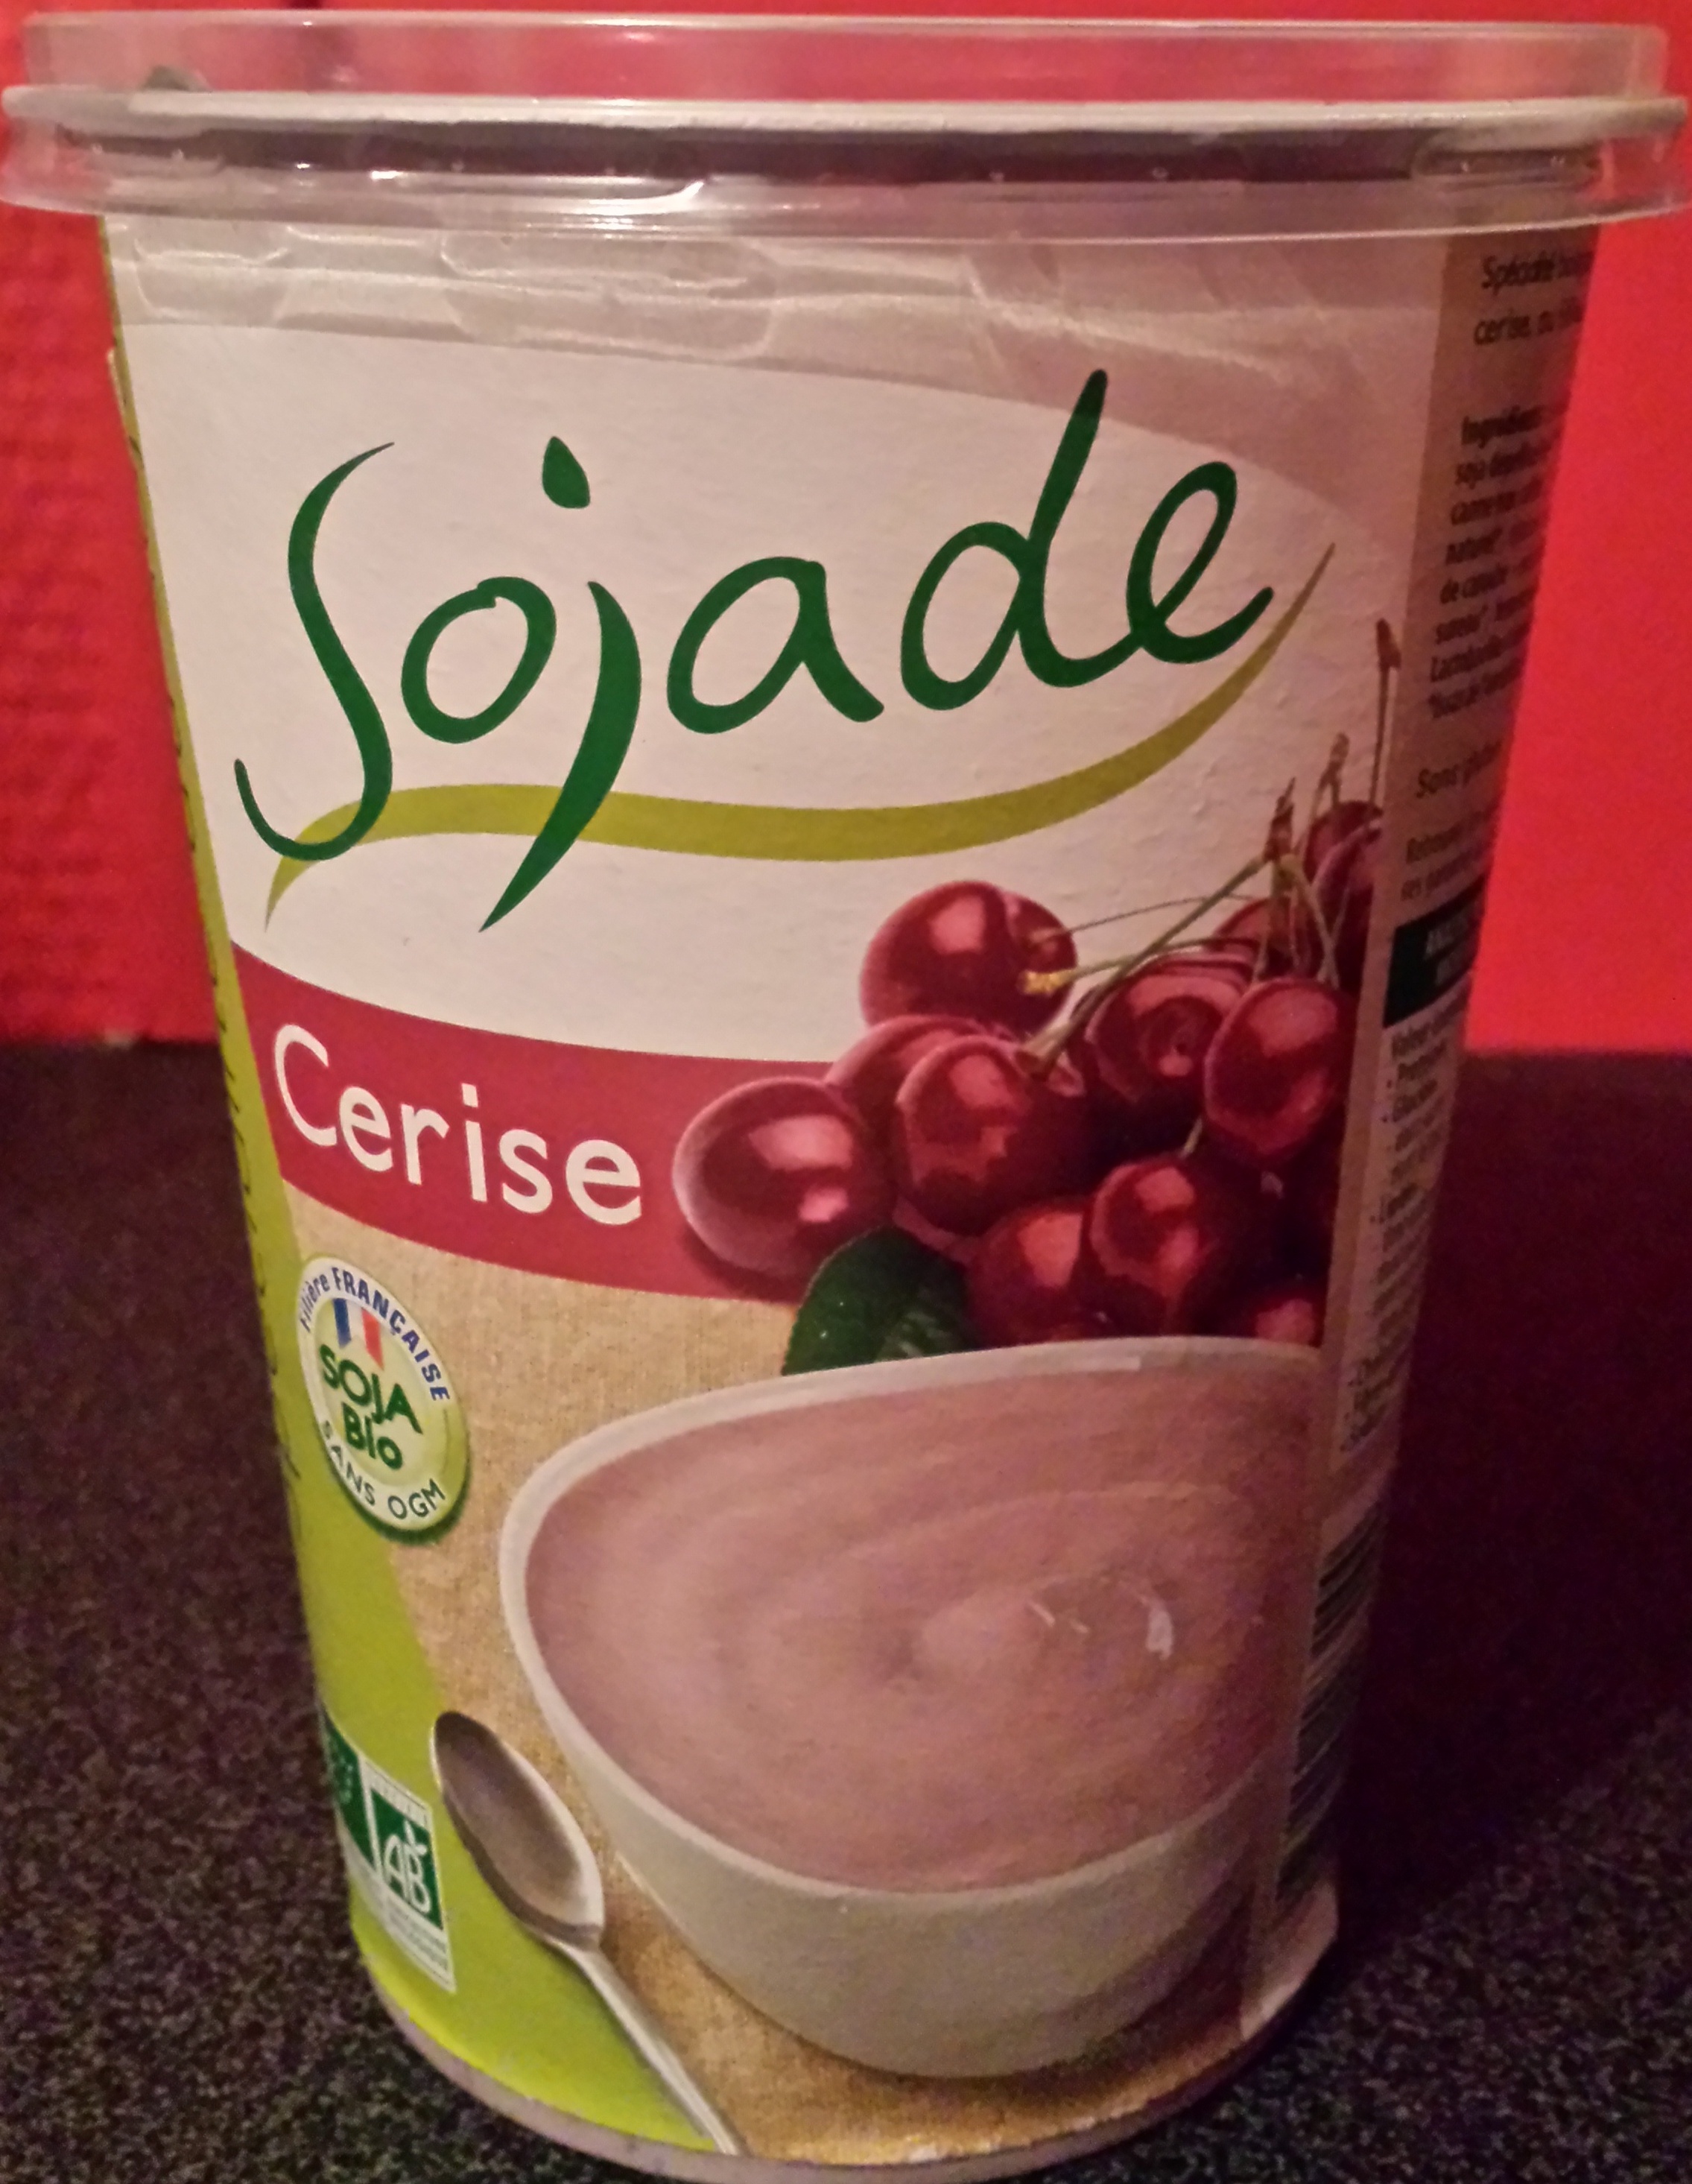 Spécialité au soja, Cerise - Producto - fr